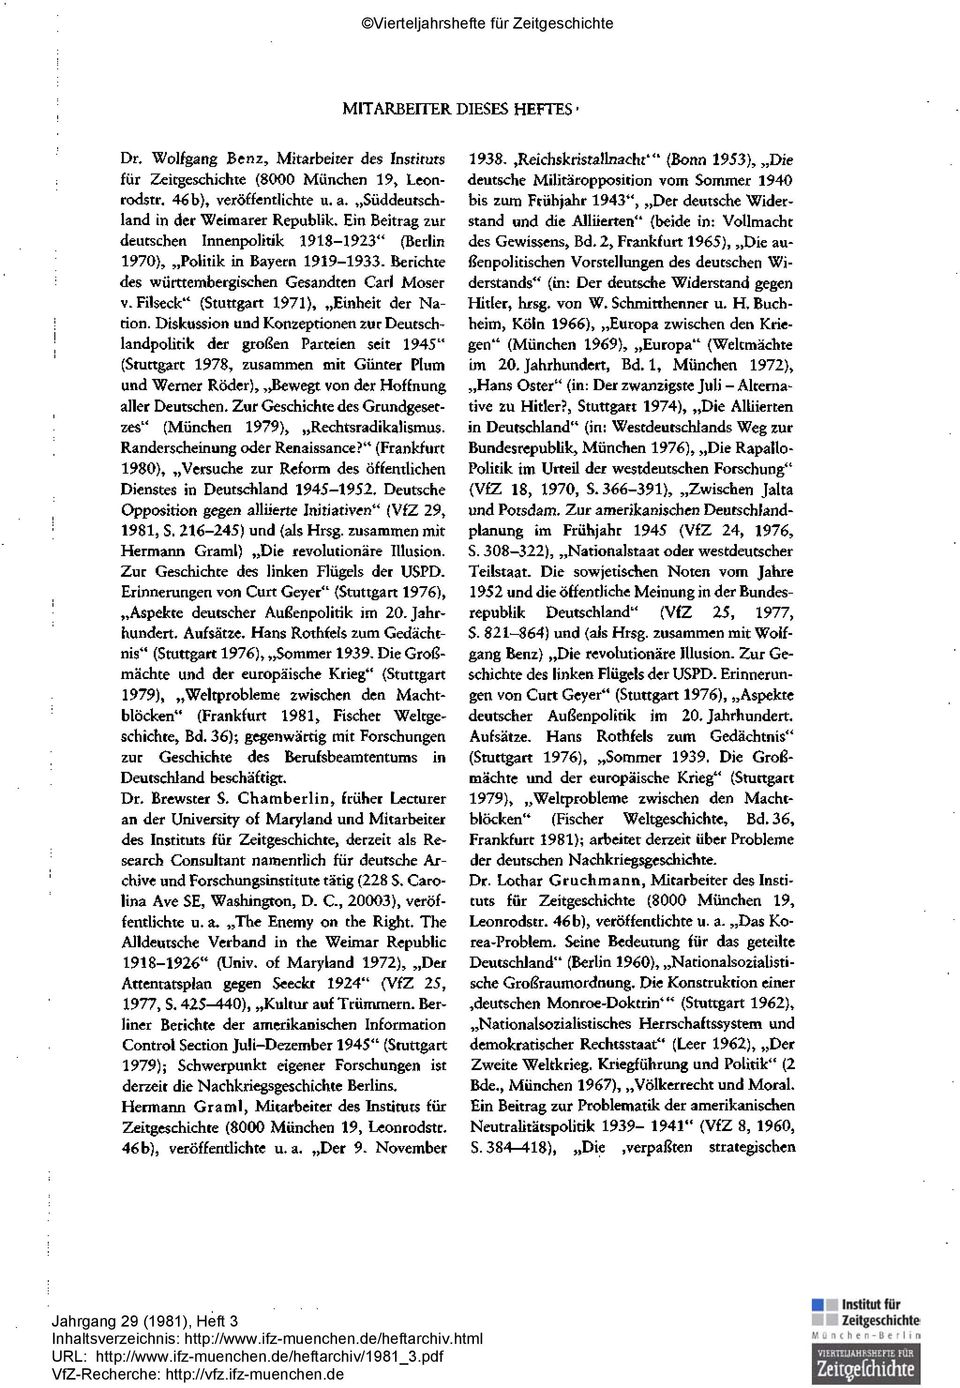 Diskussion und Konzeptionen zur Deutschlandpolitik der großen Parteien seit 1945" (Stuttgart 1978, zusammen mit Günter Plum und Werner Röder), Bewegt von der Hoffnung aller Deutschen.